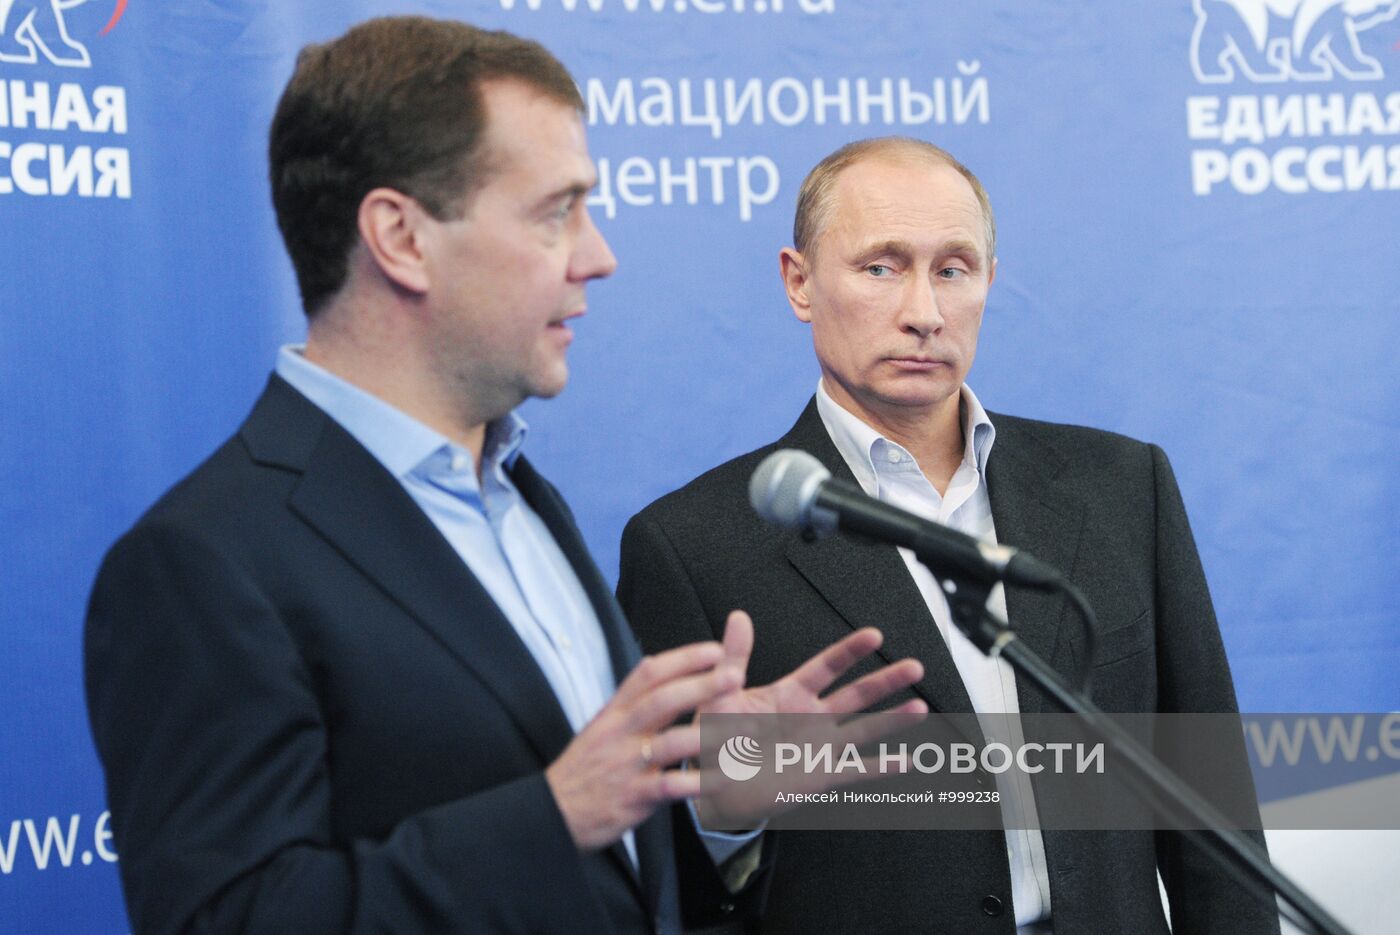 Д.Медведев и В.Путин в Центральном штабе "Единой России"